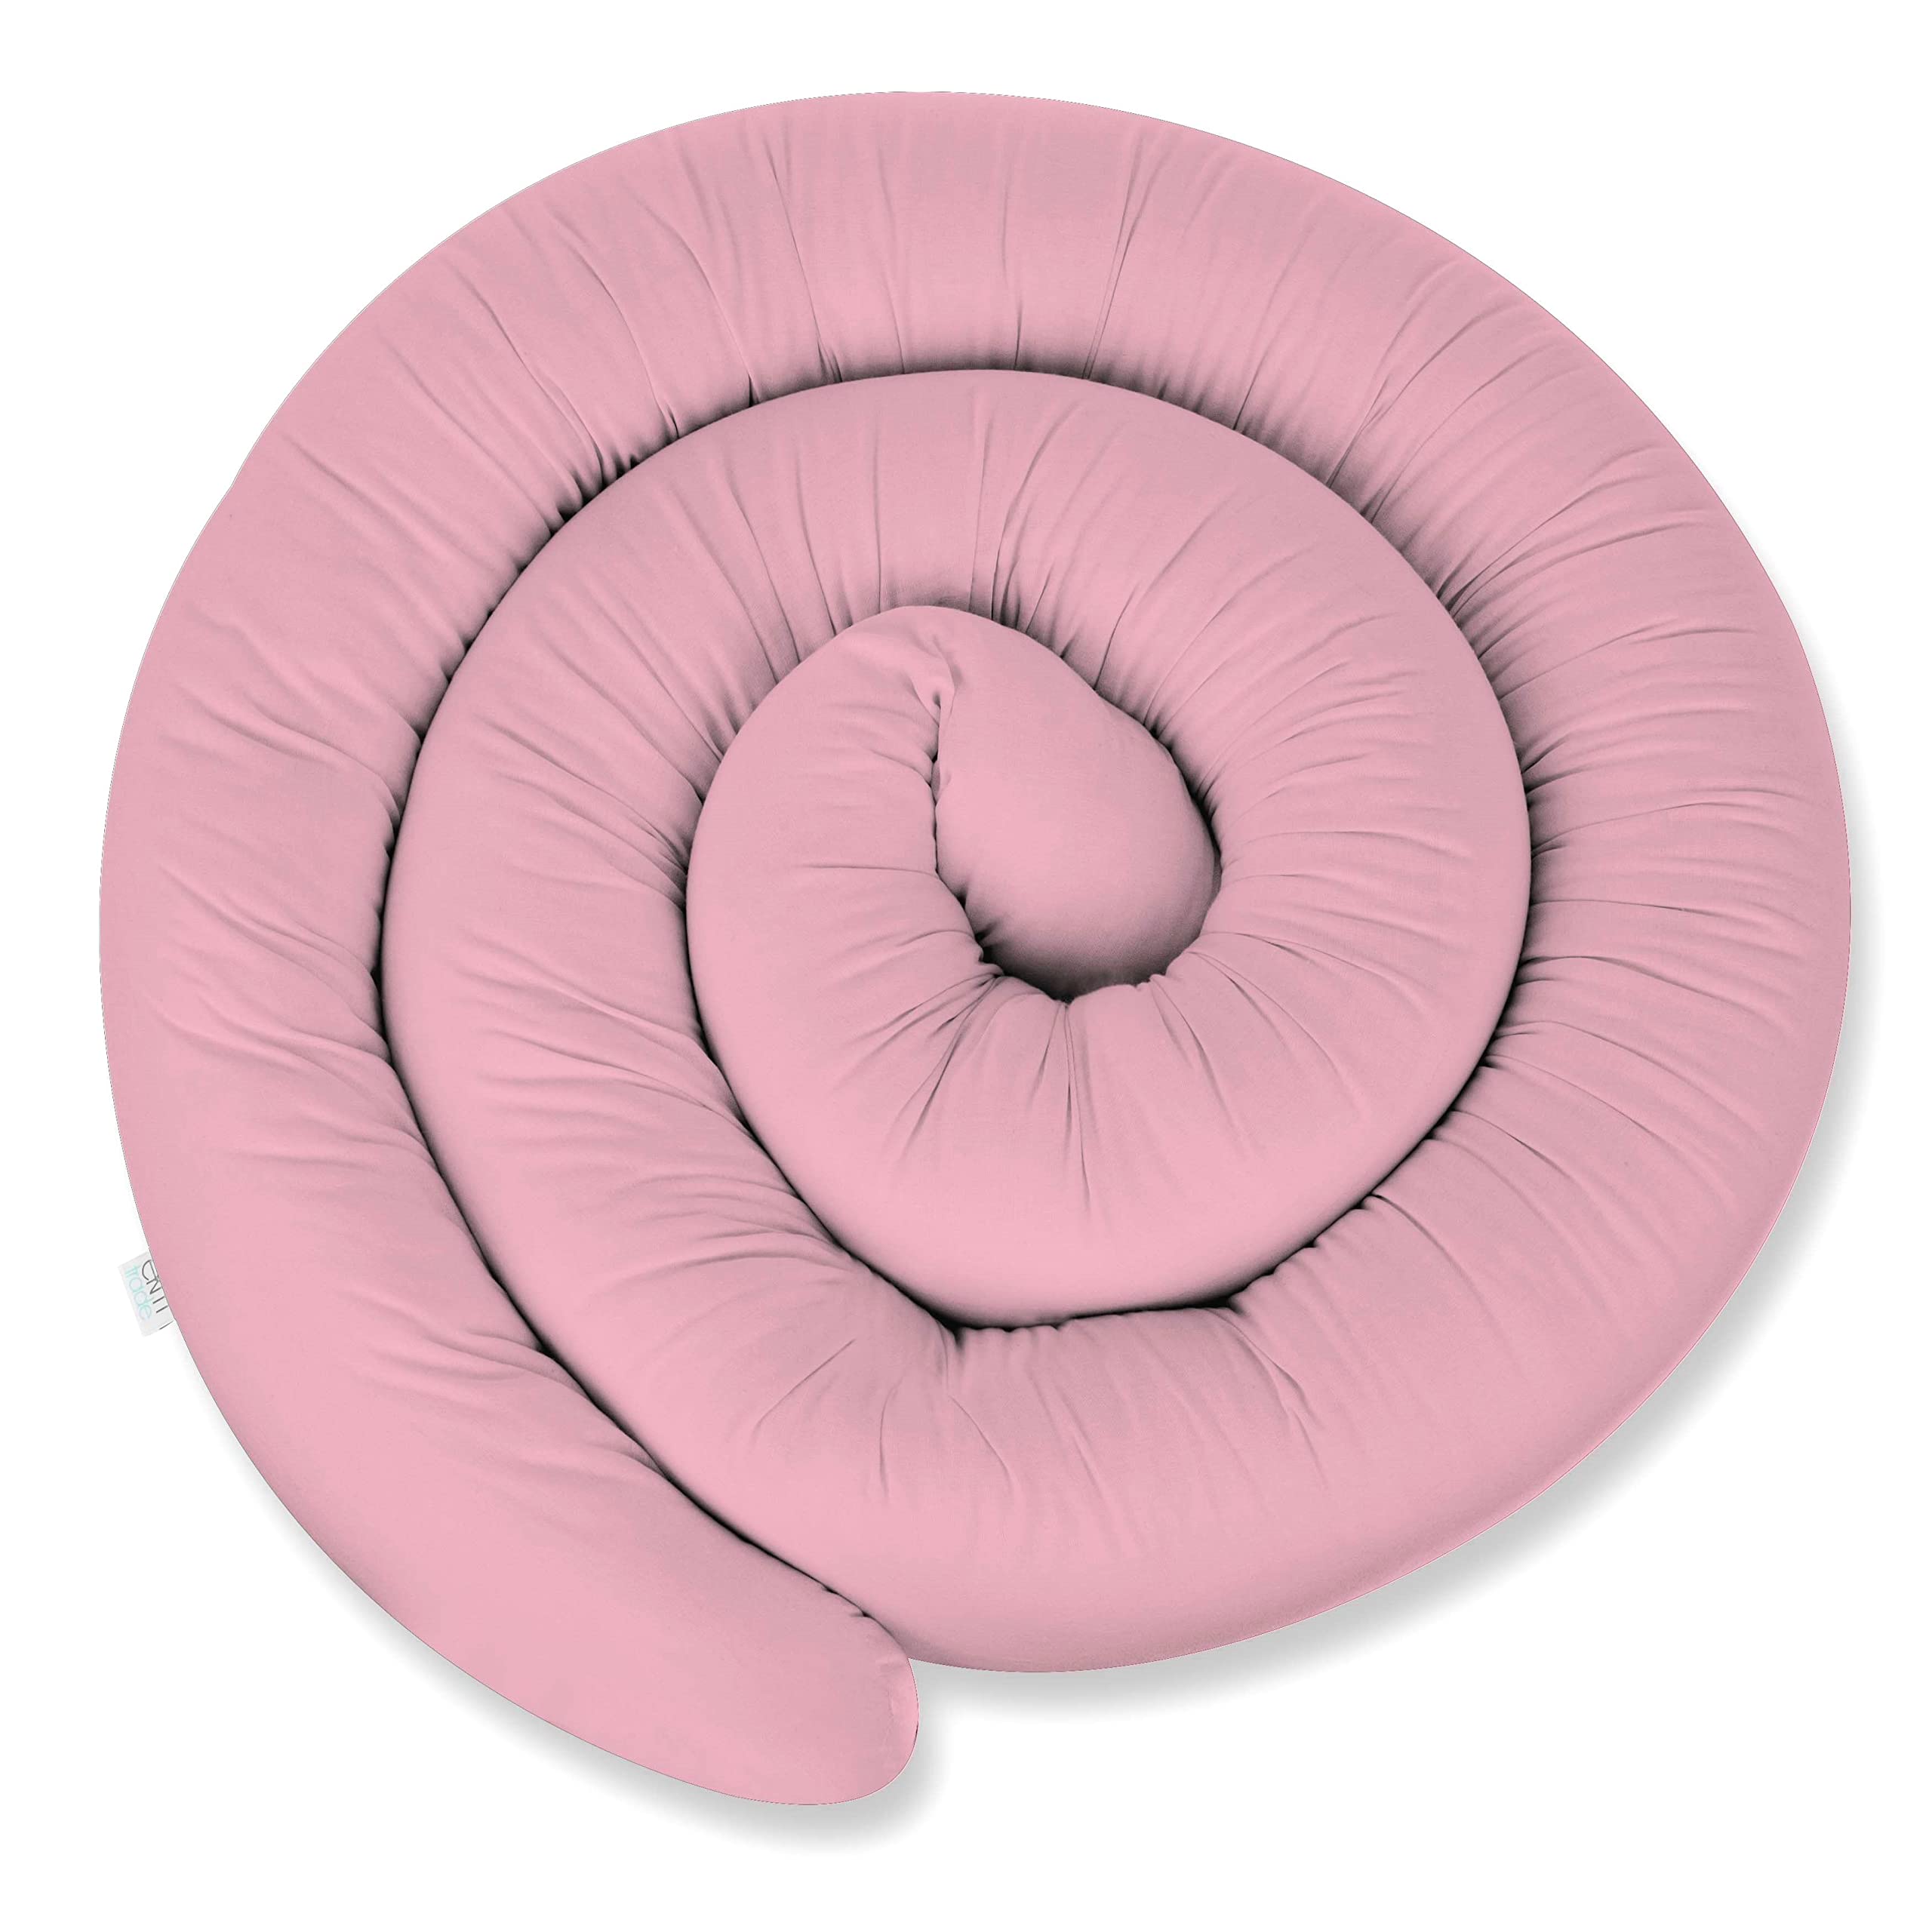 XXL 300 cm Bettschlange für Allergiker Bettkissen Stillkissen Bettrolle Zierkissen Bettumrandung Schlange Handmade 100% Baumwolle ekmTRADE (300 cm, 35)